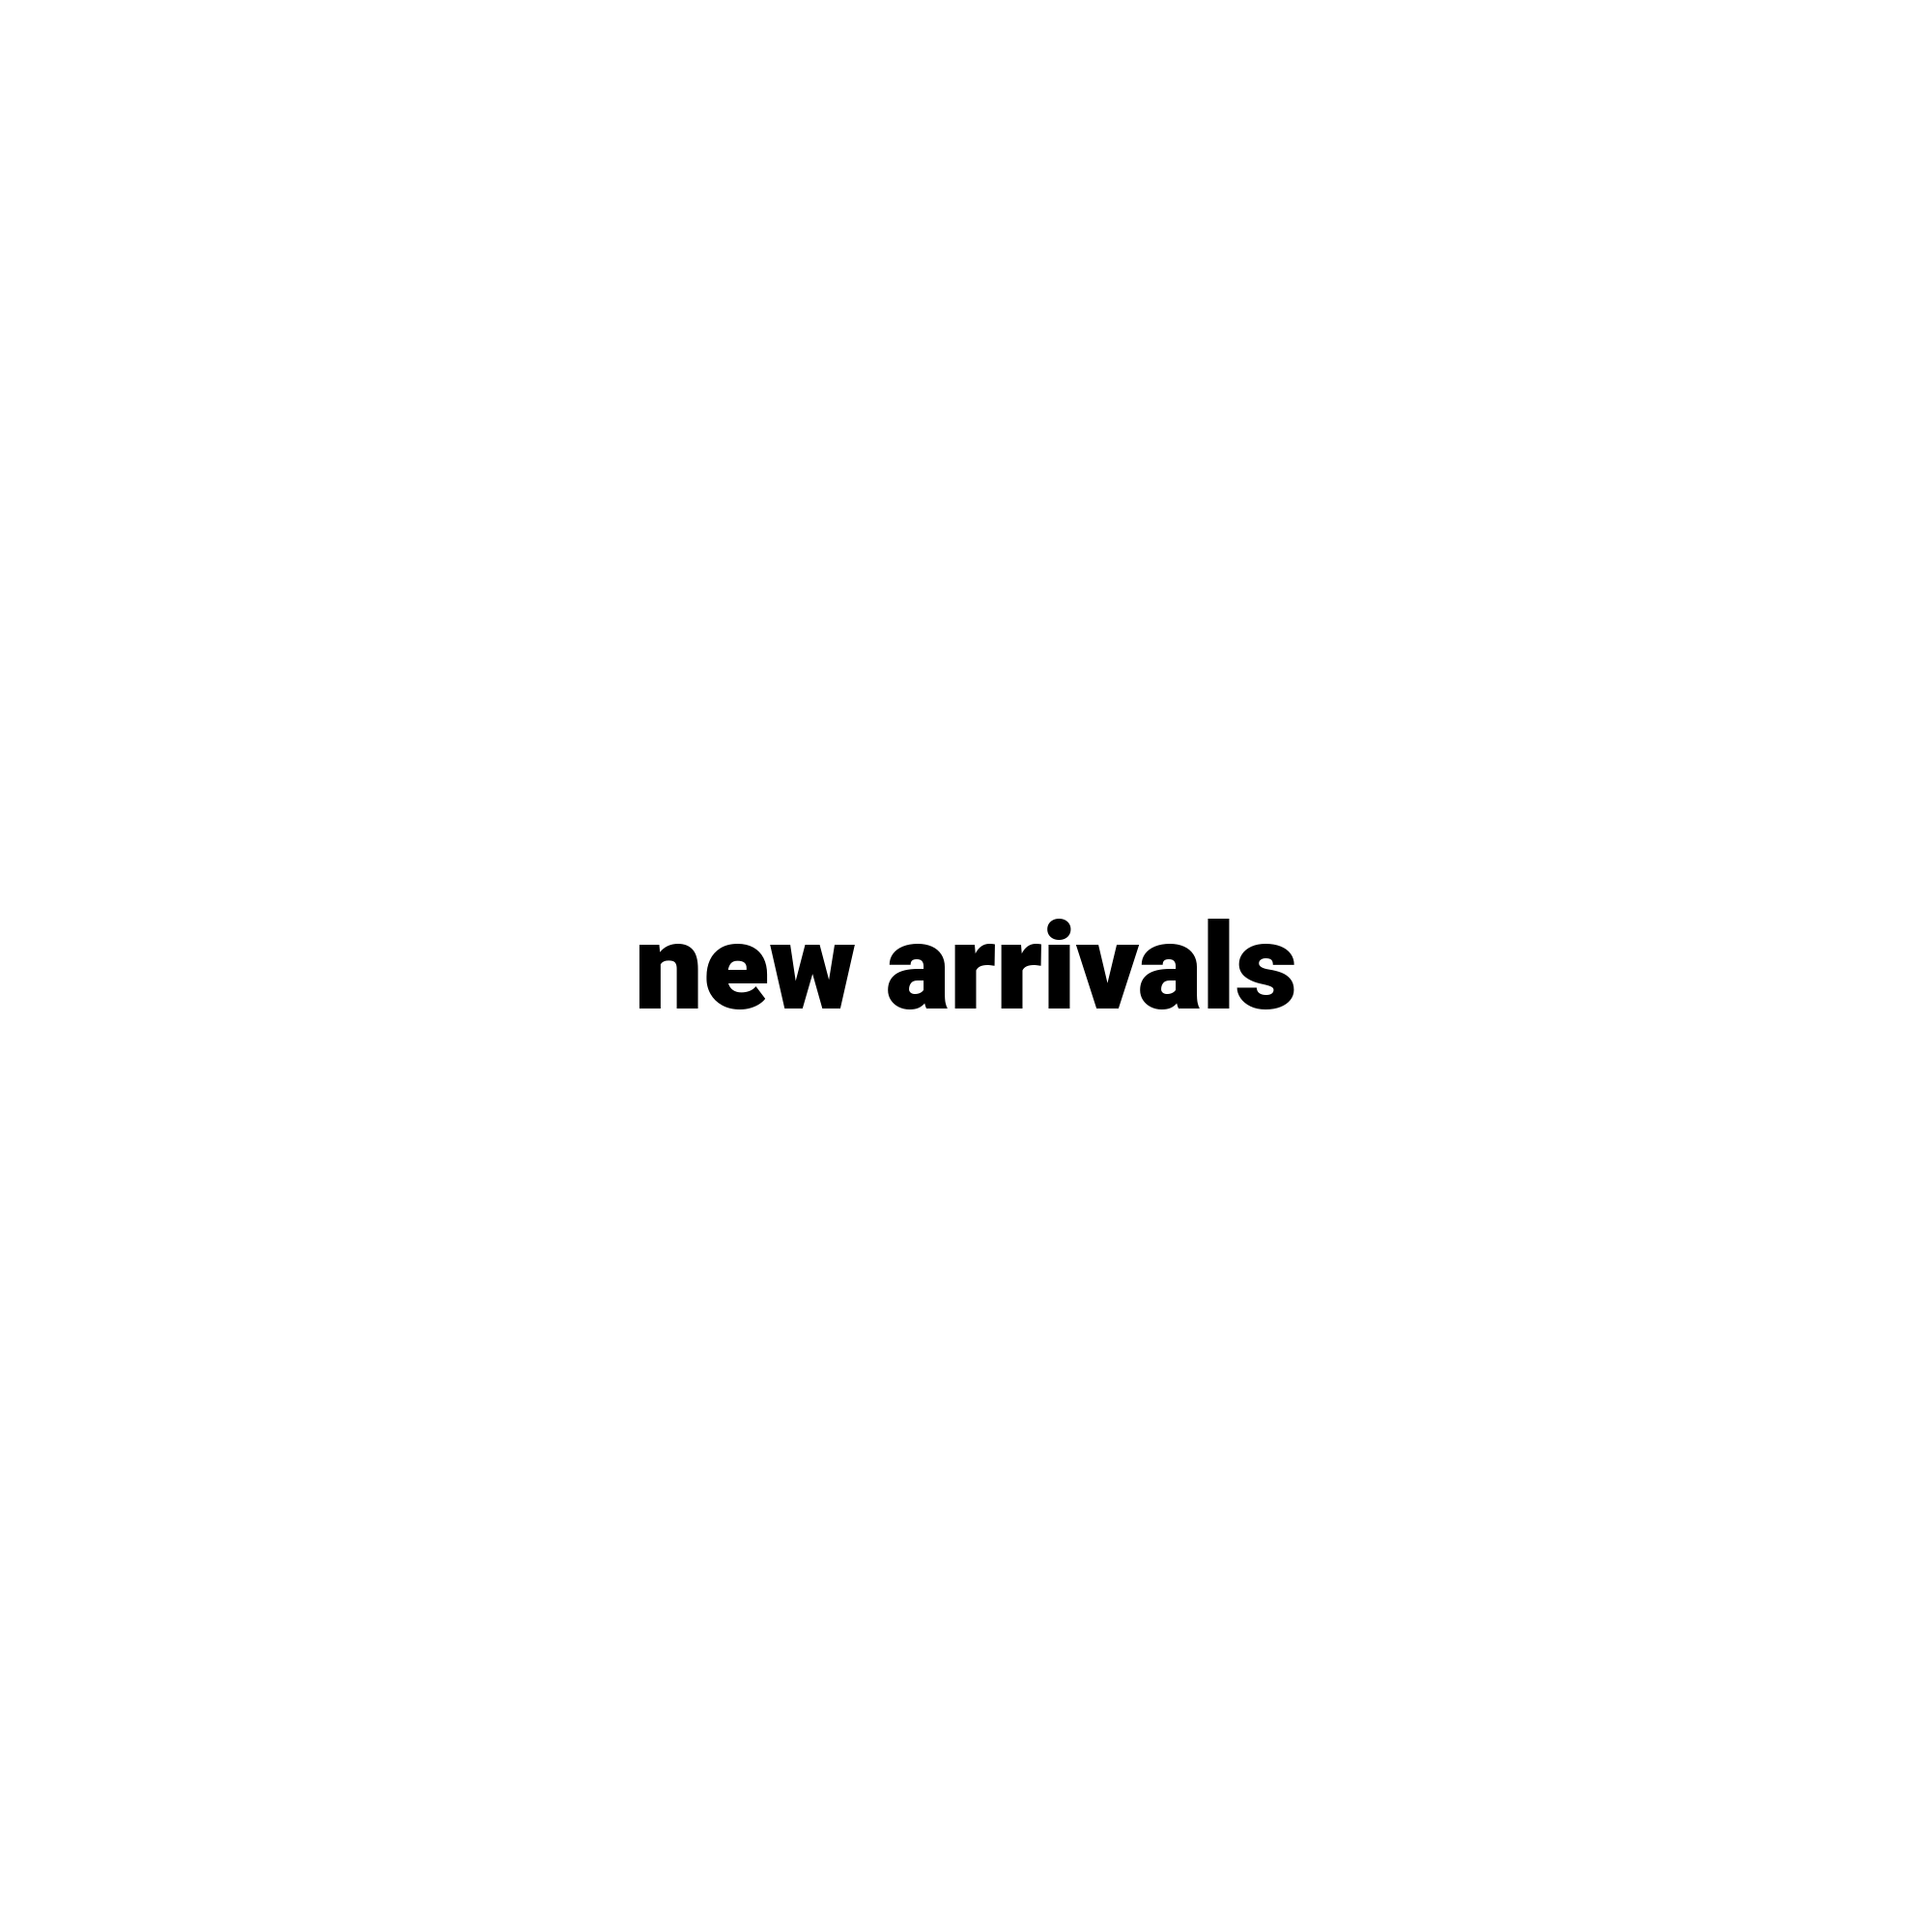 new_arrivals_place_holder.png?v=1689525205